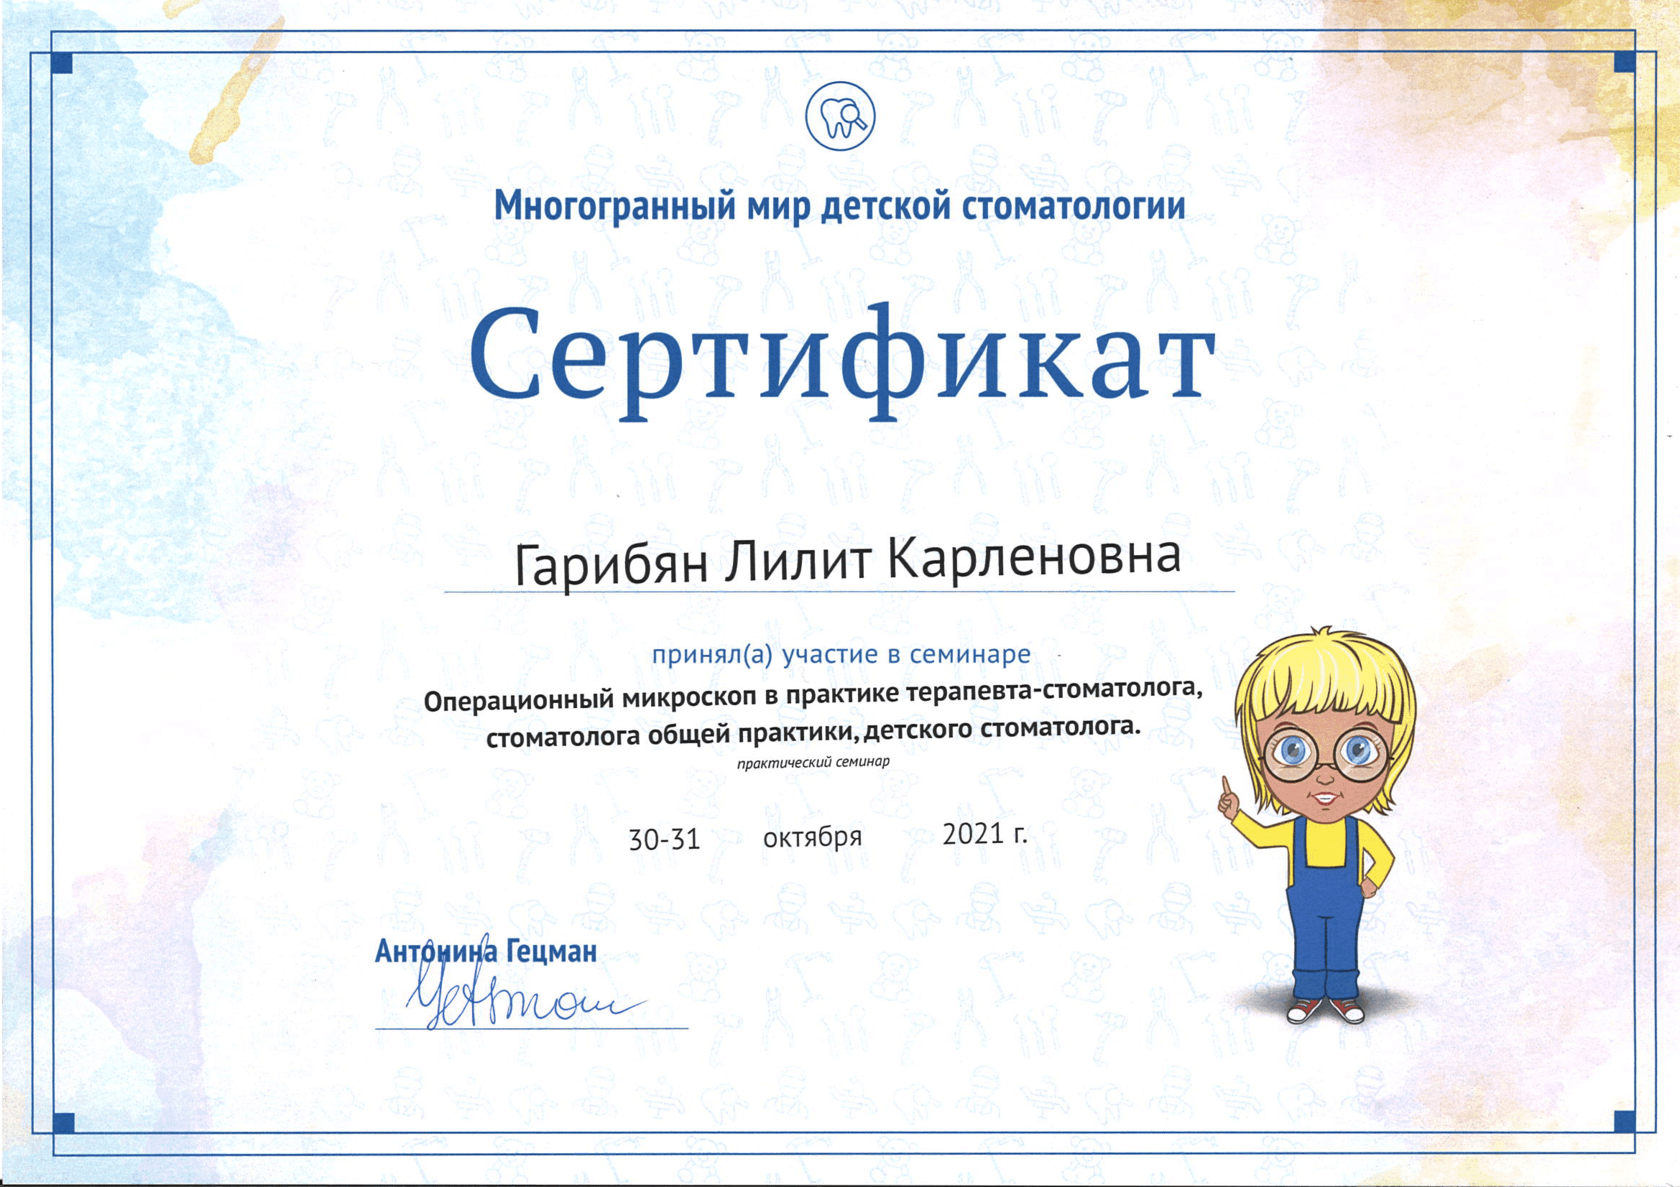 Гарибян Лилит Карленовна сертификат специалиста 7